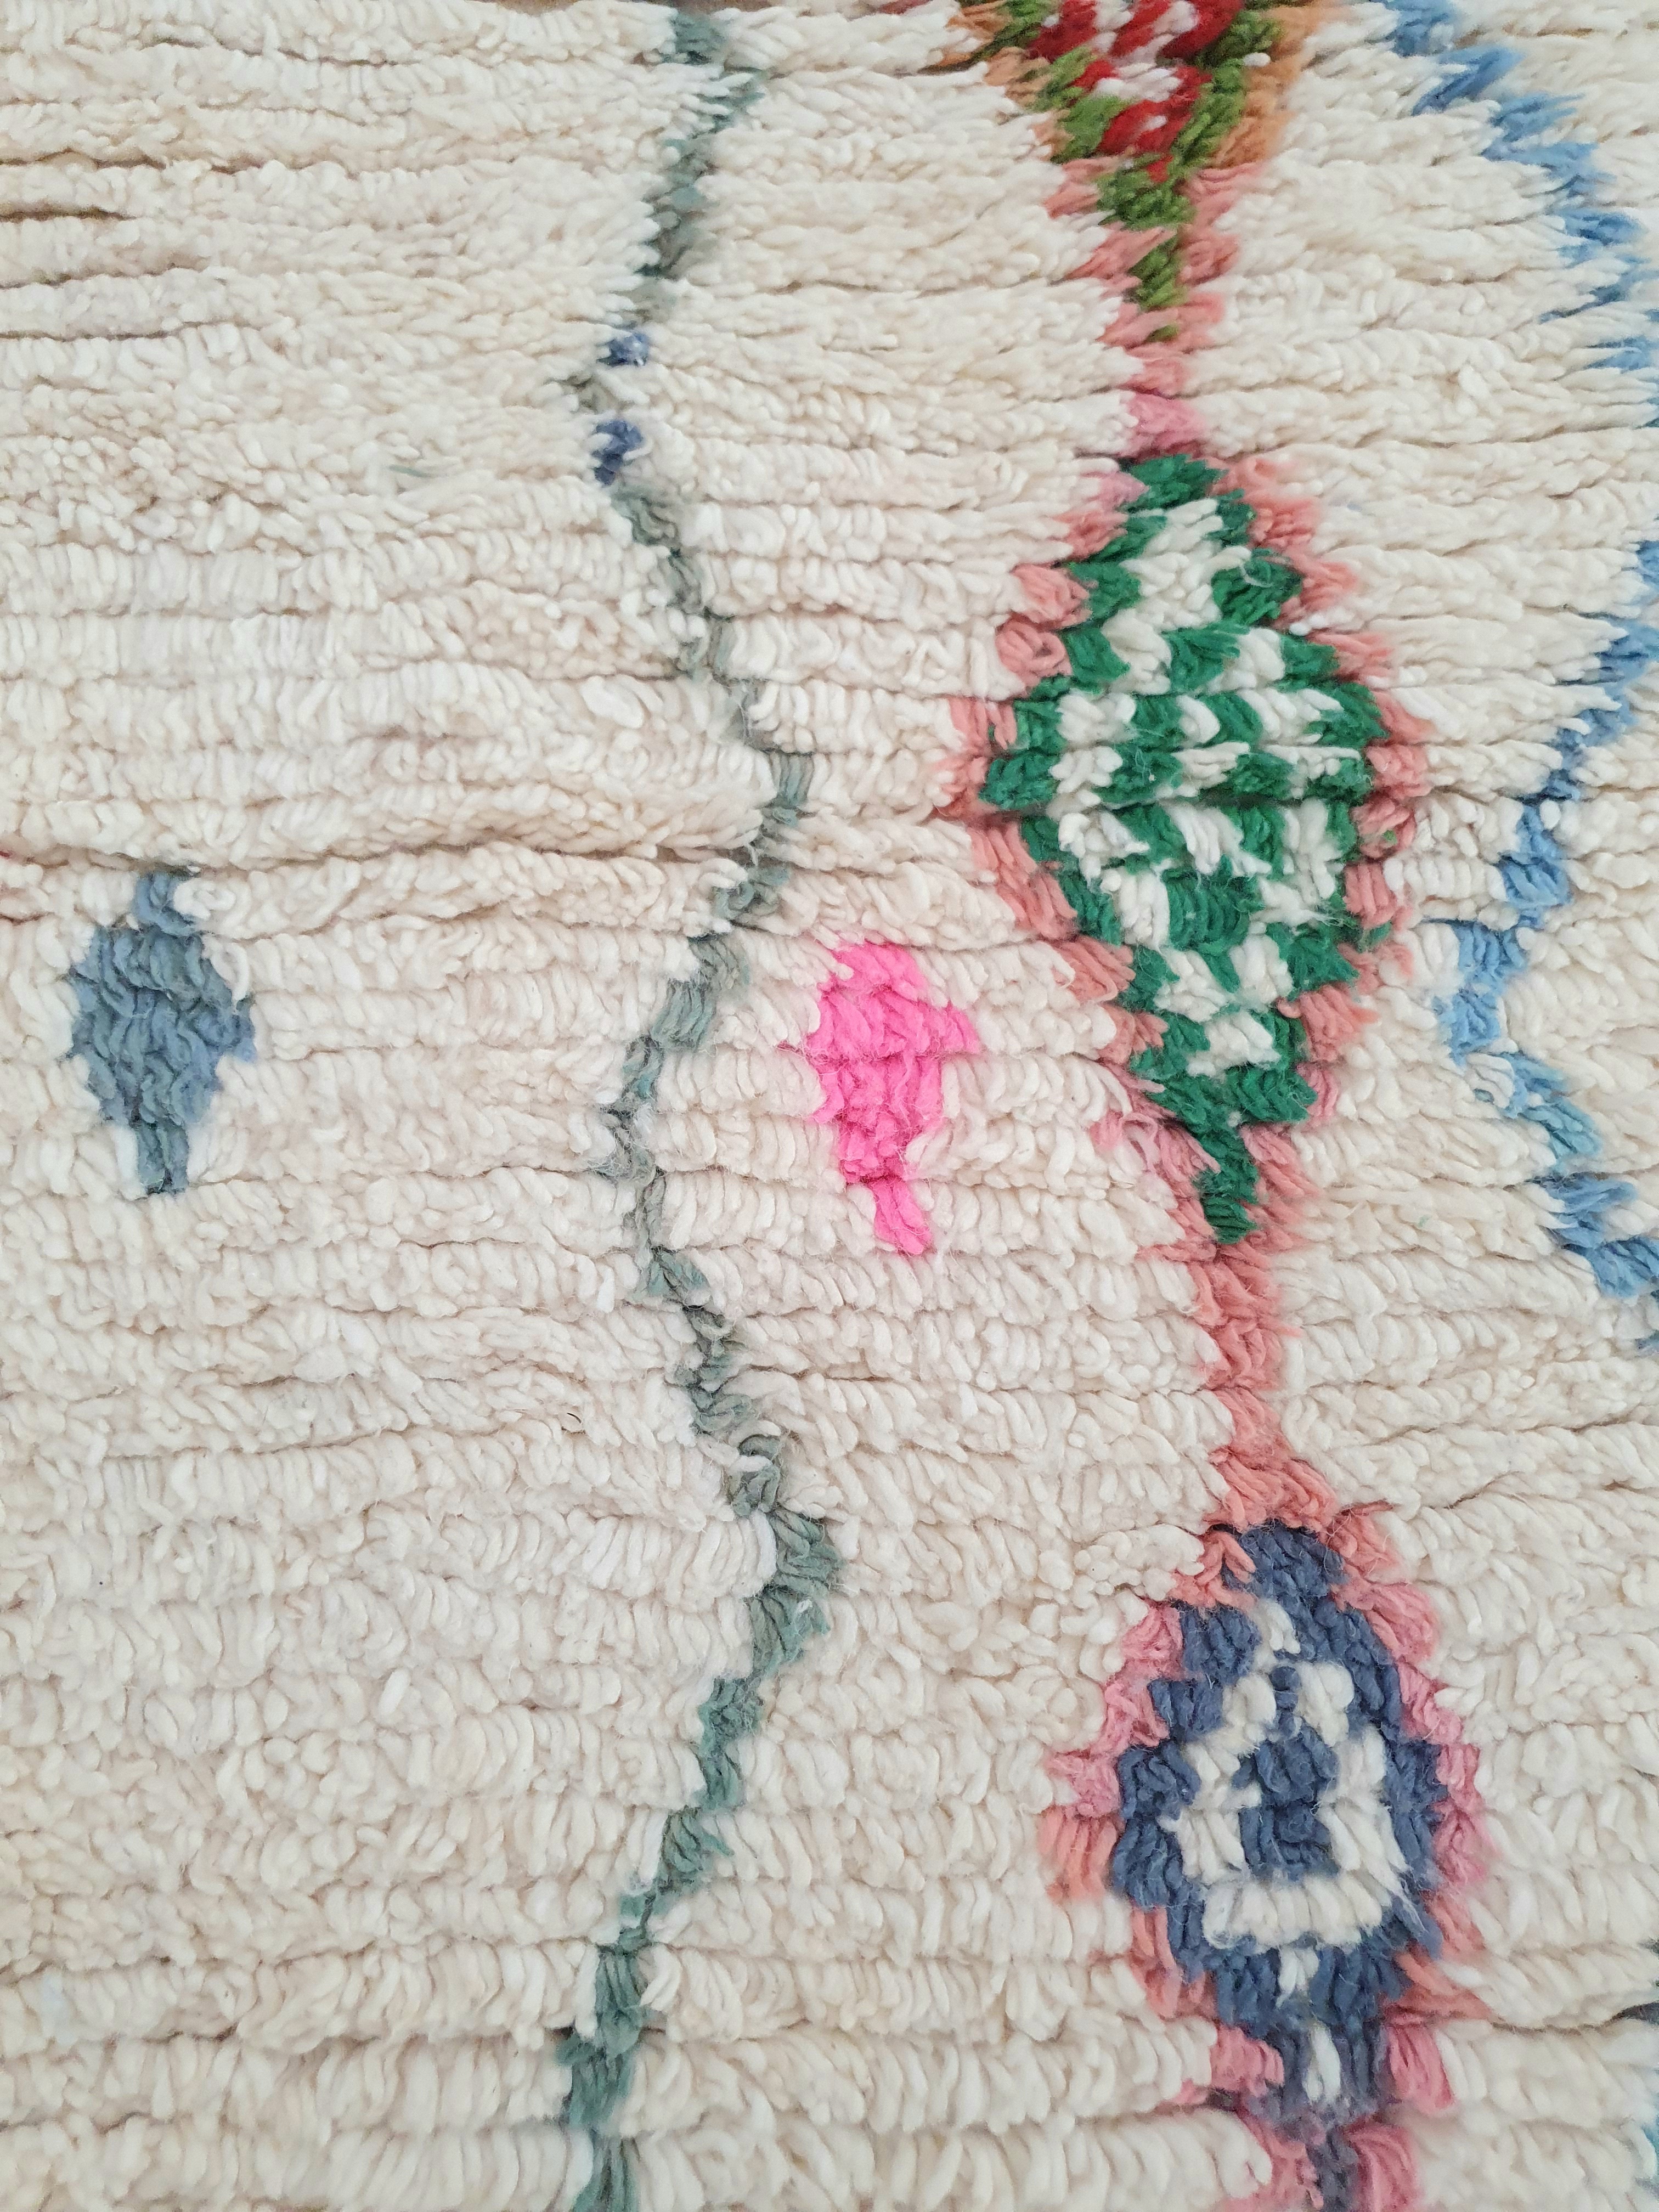 Authentique tapis berbère Marocain fait main écru et motifs multicolores